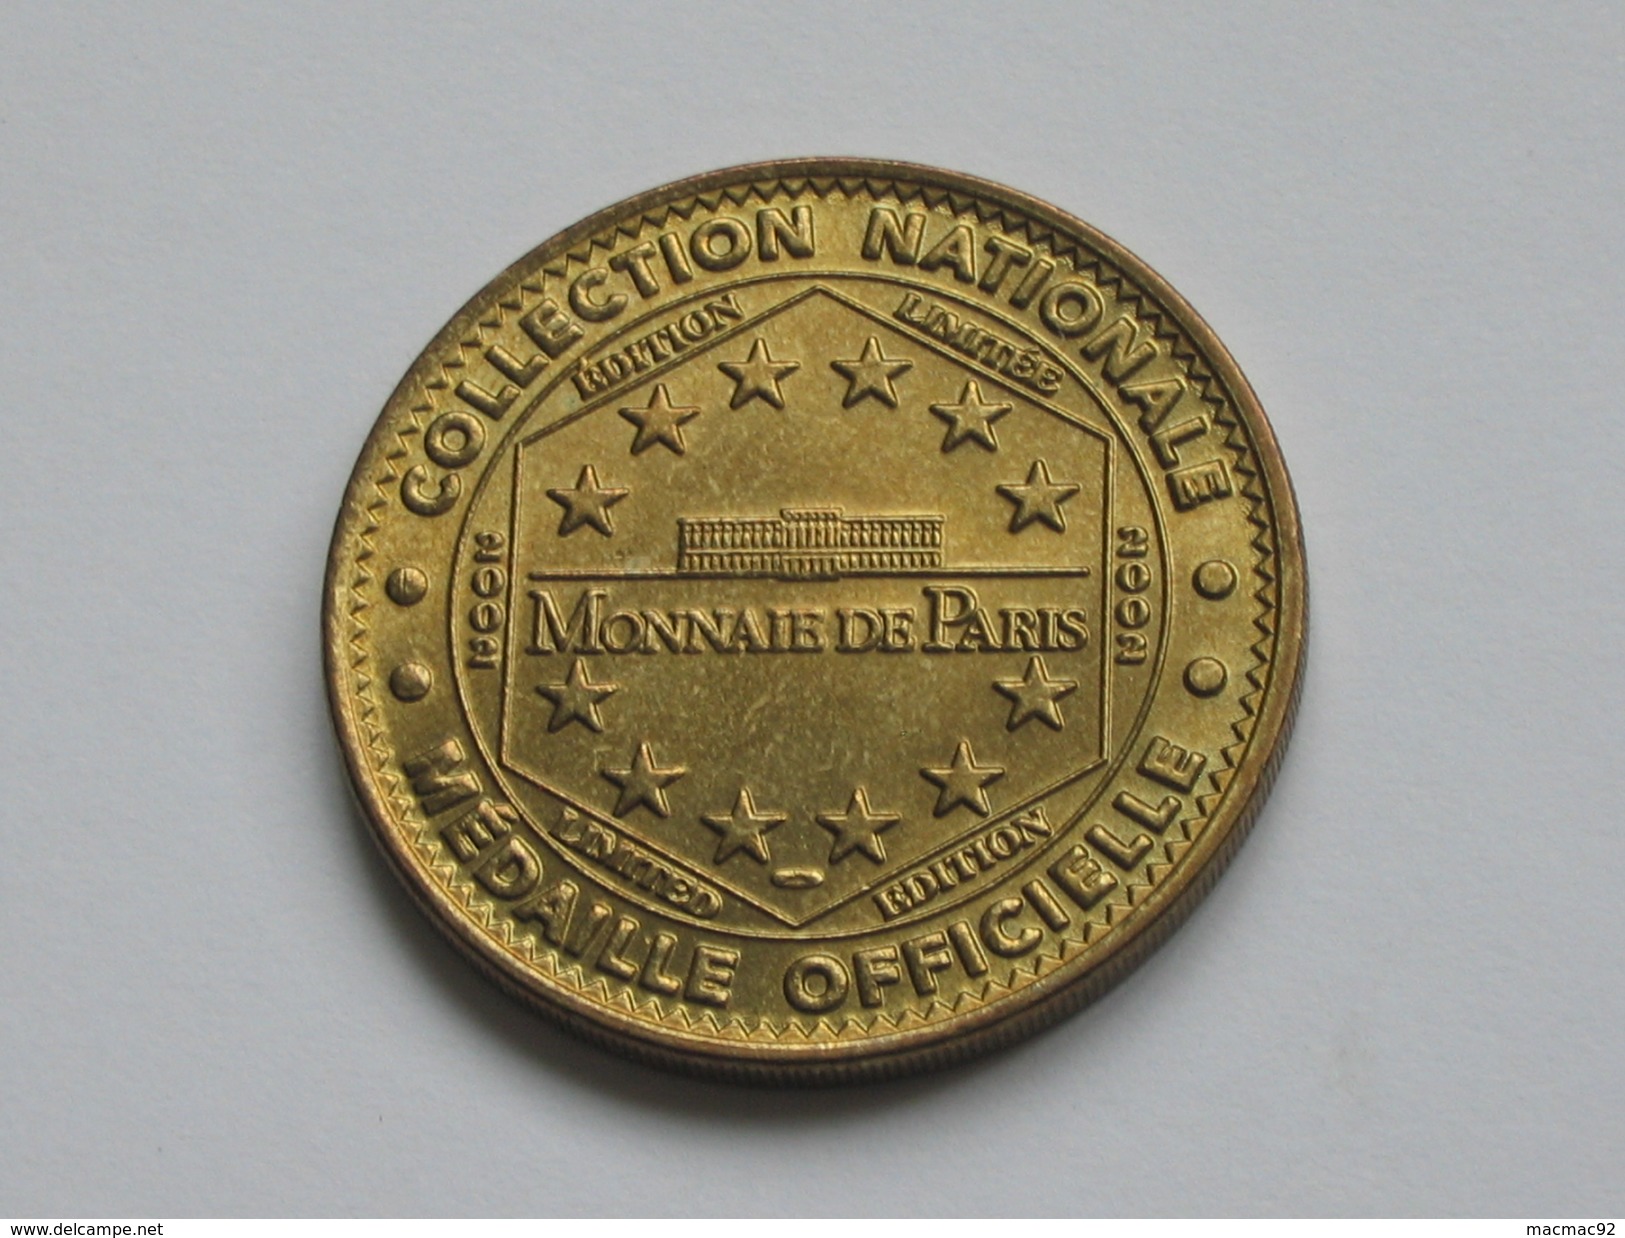 Médaille De La Monnaie De Paris - CHATEAU DE VERSAILLES - 2002    **** EN ACHAT IMMEDIAT  **** - 2002